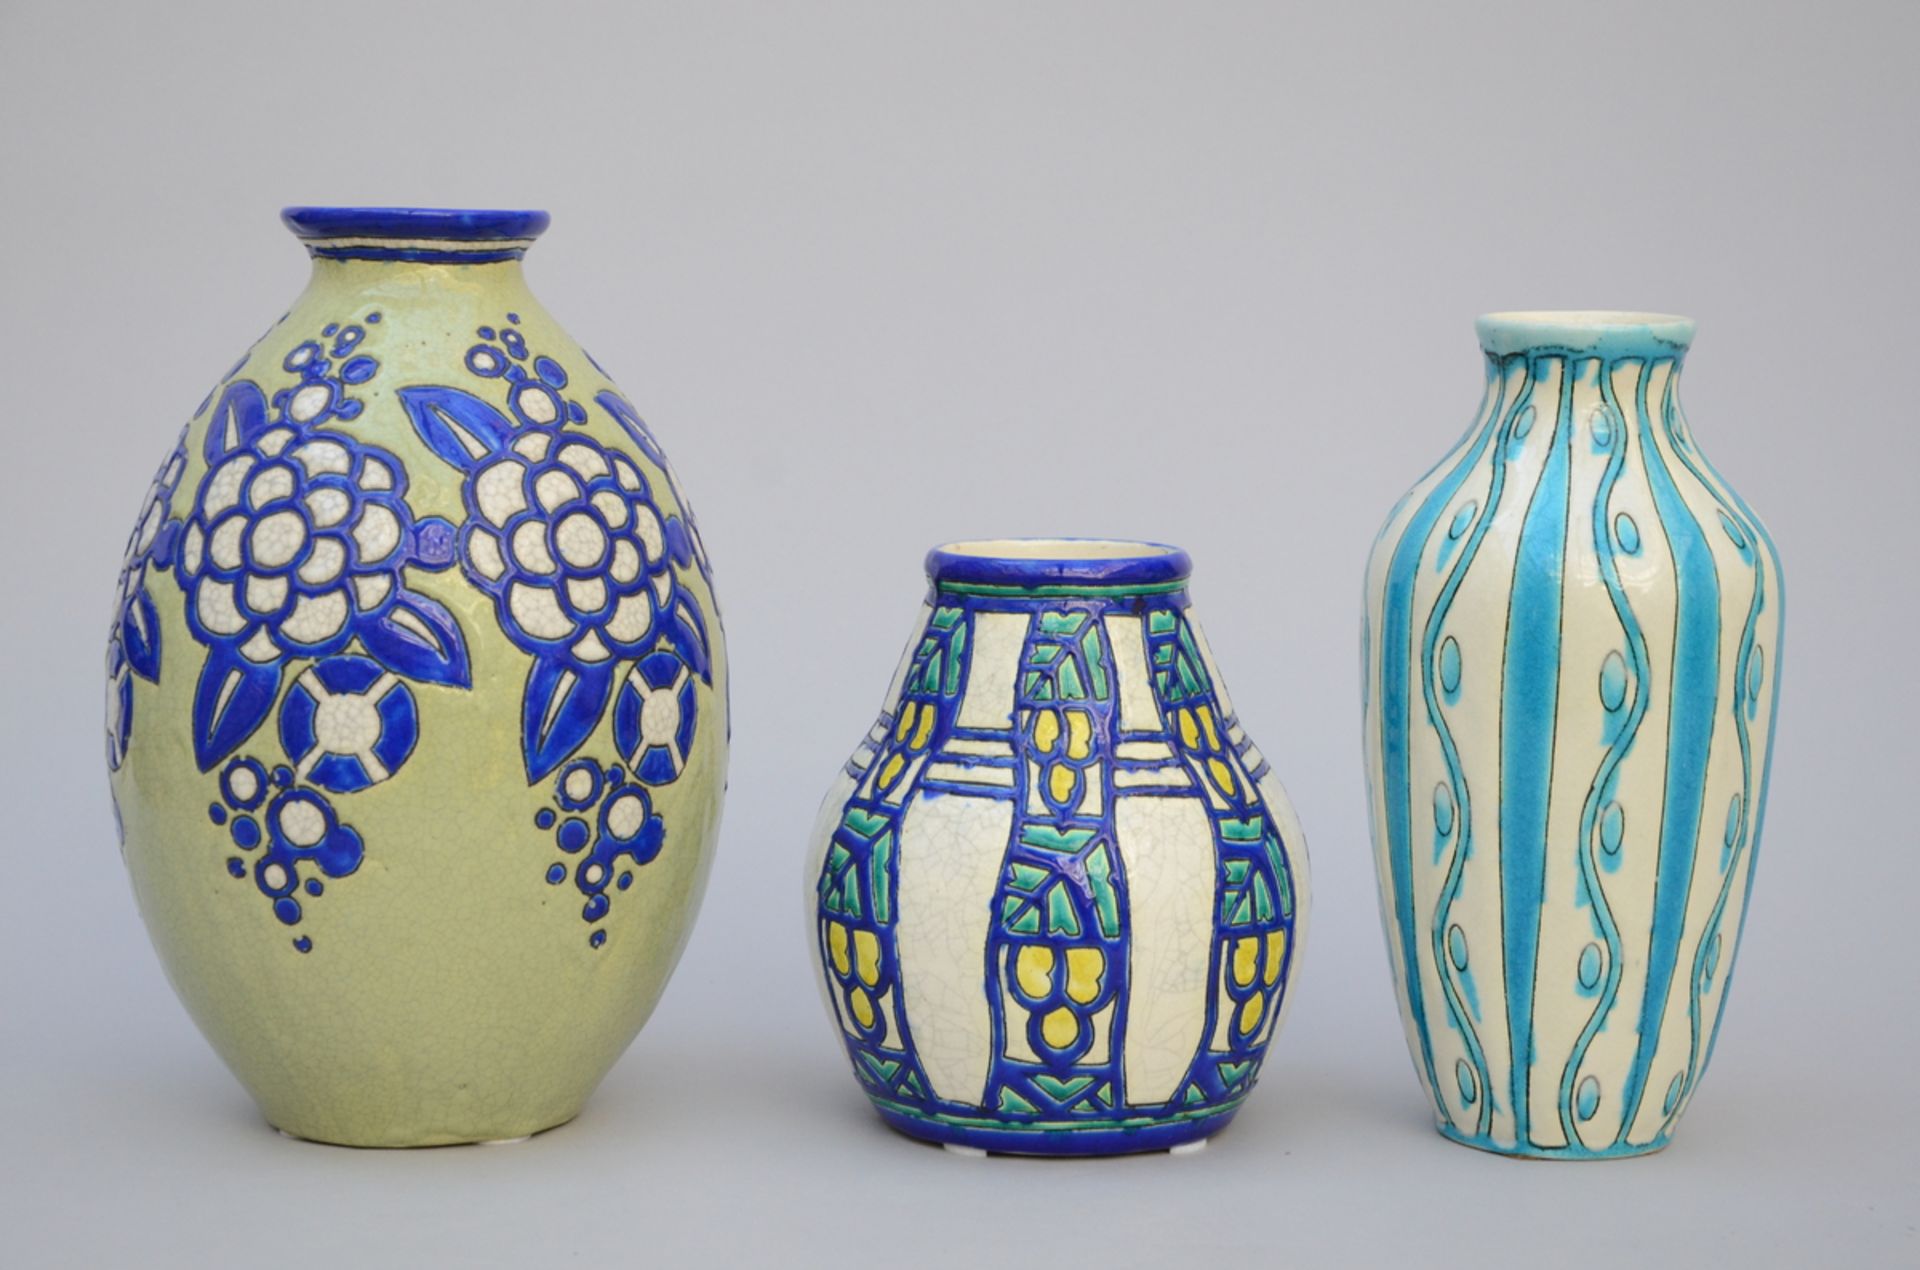 3 Art Deco vases, Boch, Charles Catteau, D952 D1121 D734 (h20 to 31cm)